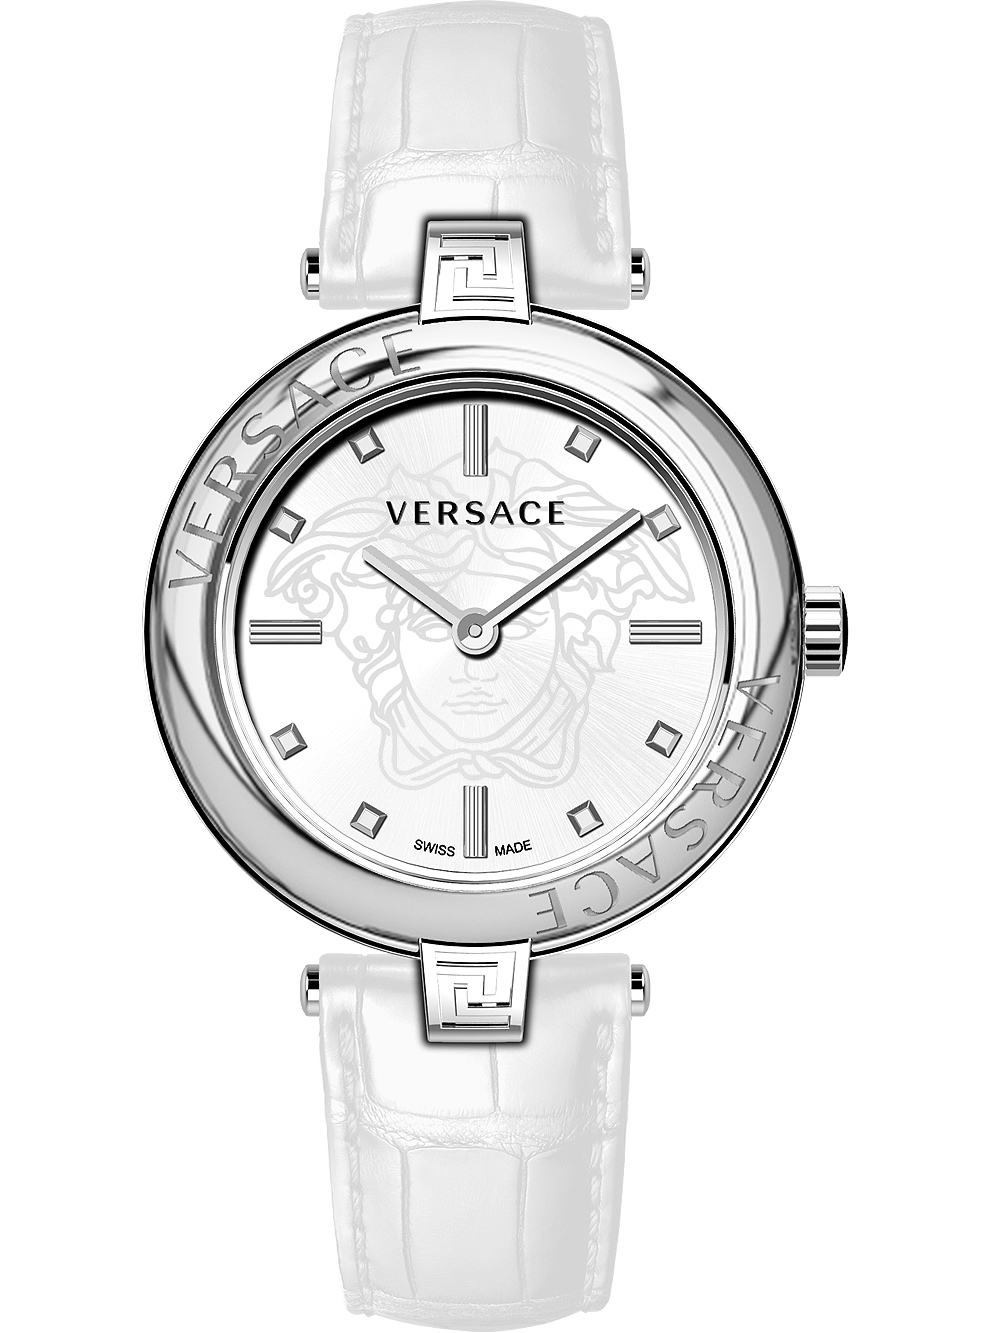 Dámské hodinky Versace VE2J00221 New Lady